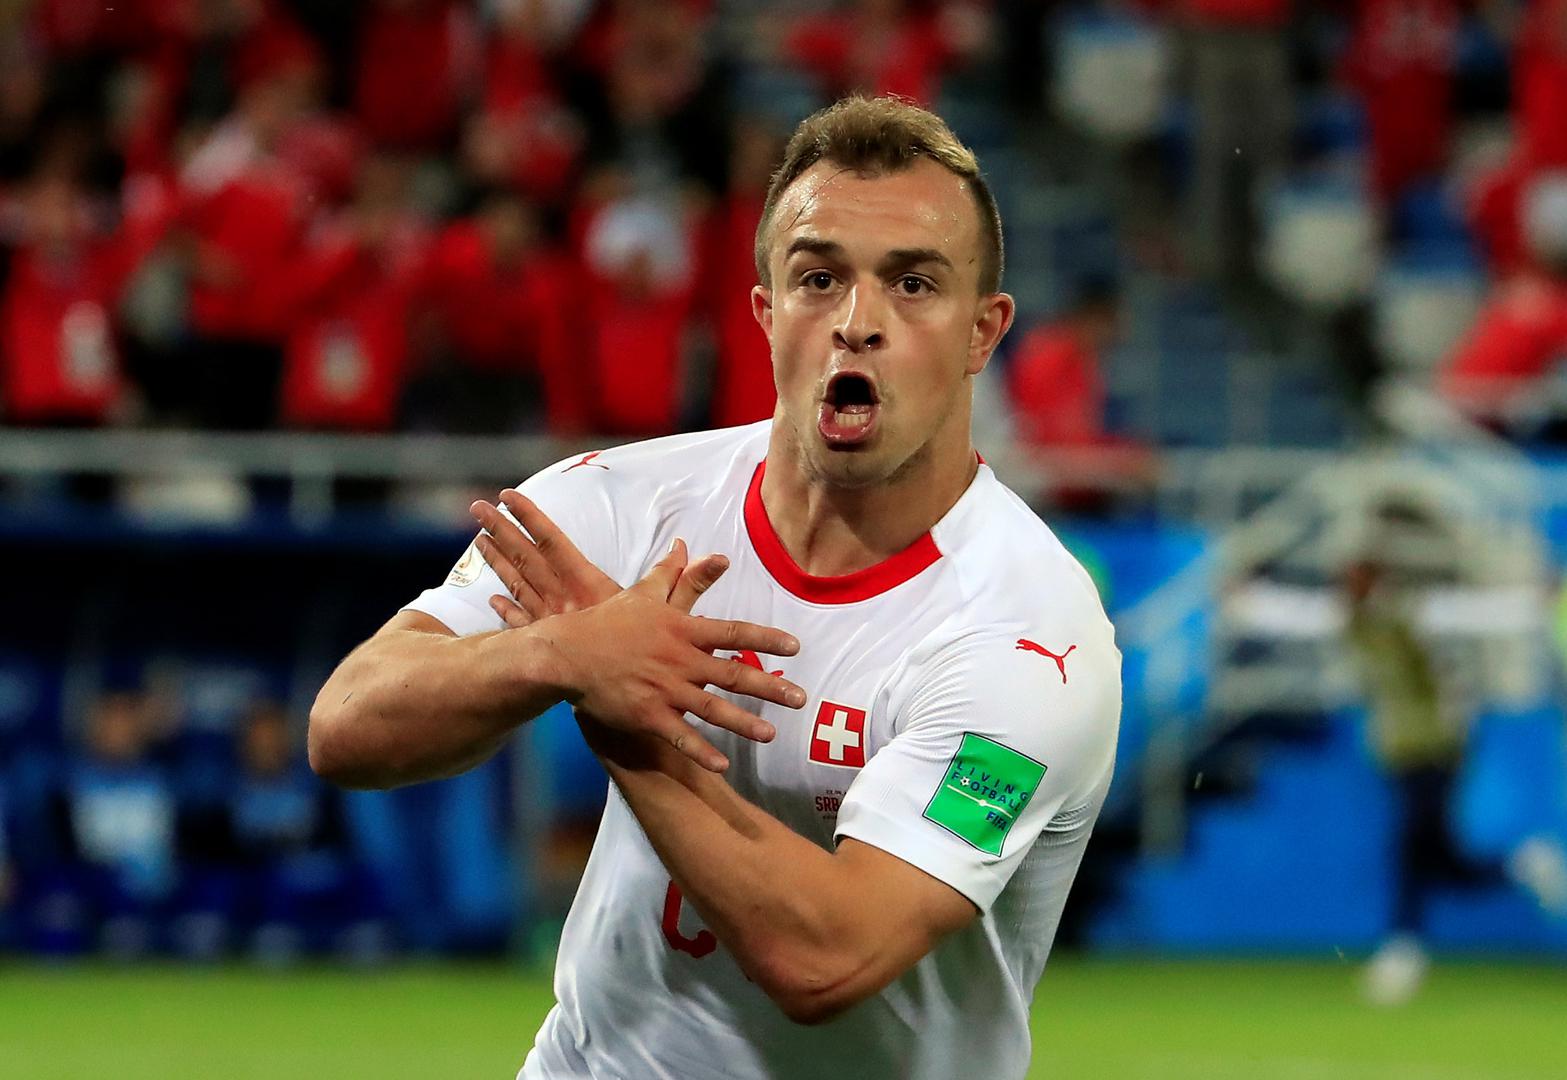 Oba švicarska gola zabili su igrači podrijetlom s Kosova, a golove su proslavili prekriživši ruke u znak orla, zaštitnog znaka Albanije.

